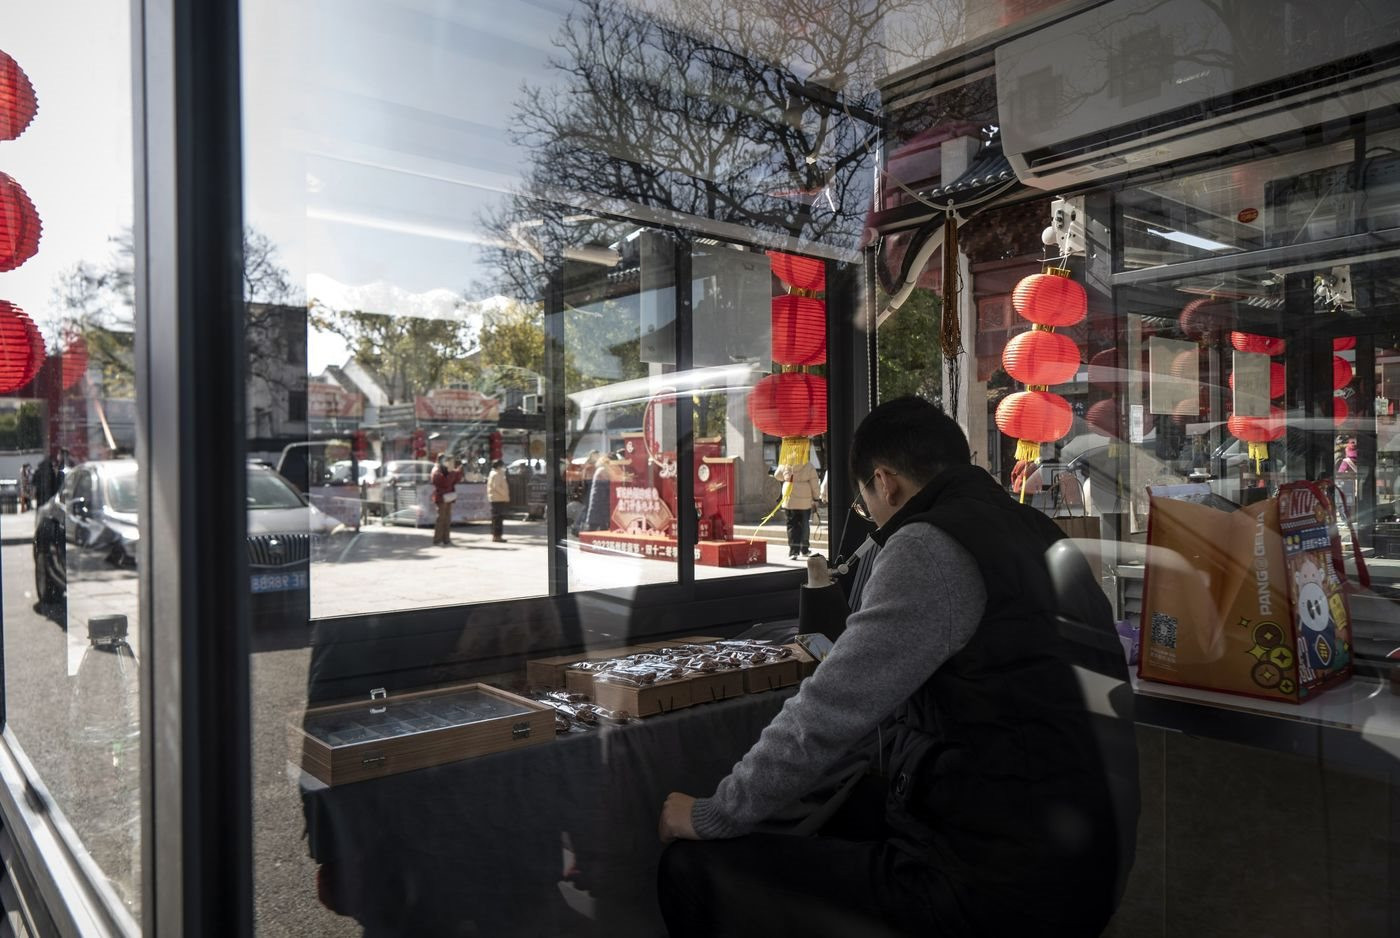 Trung Quốc 'phù phép' cho các hàng chục nghìn bốt xét nghiệm Covid: Địa điểm 'muốn quên' của người dân nay thành cửa hàng thực phẩm và trạm nghỉ cho công nhân vệ sinh - Ảnh 4.